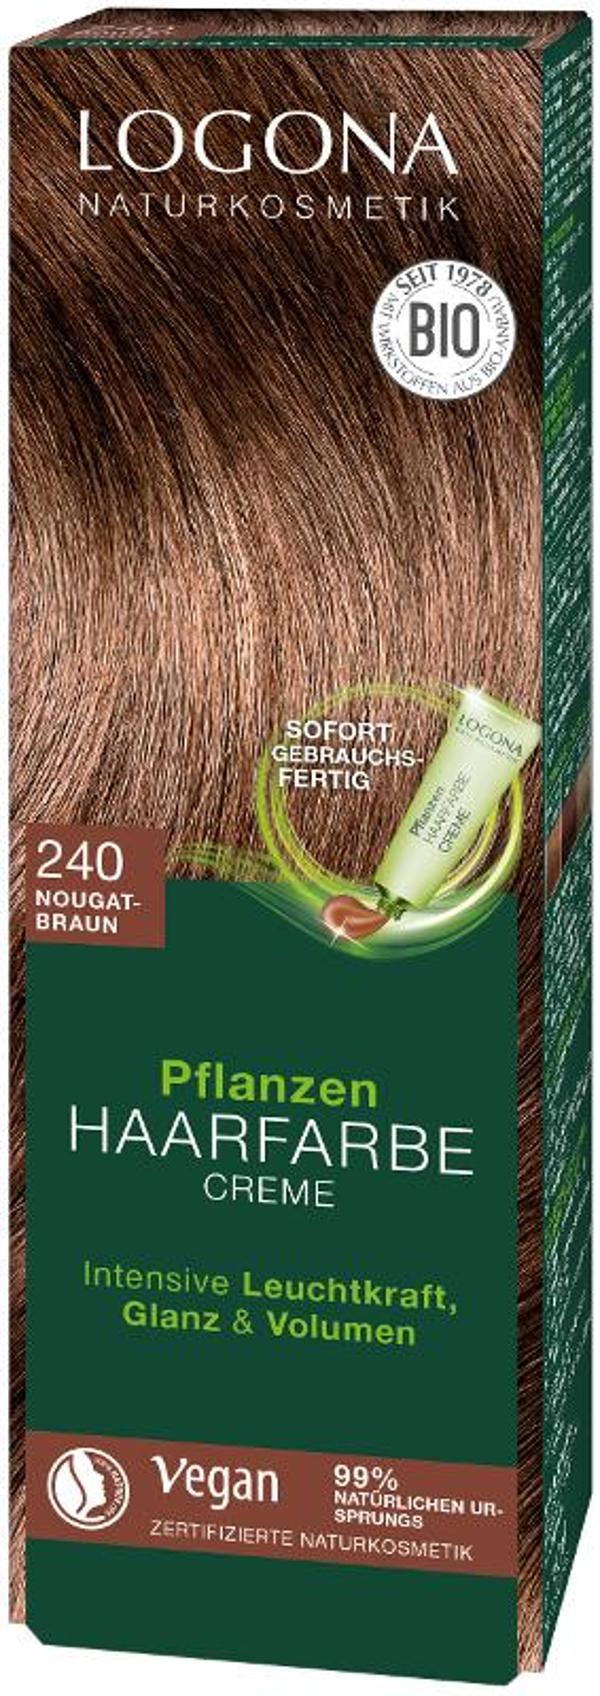 Produktfoto zu Pflanzen Haarfarbe 240 nougatbraun 150ml